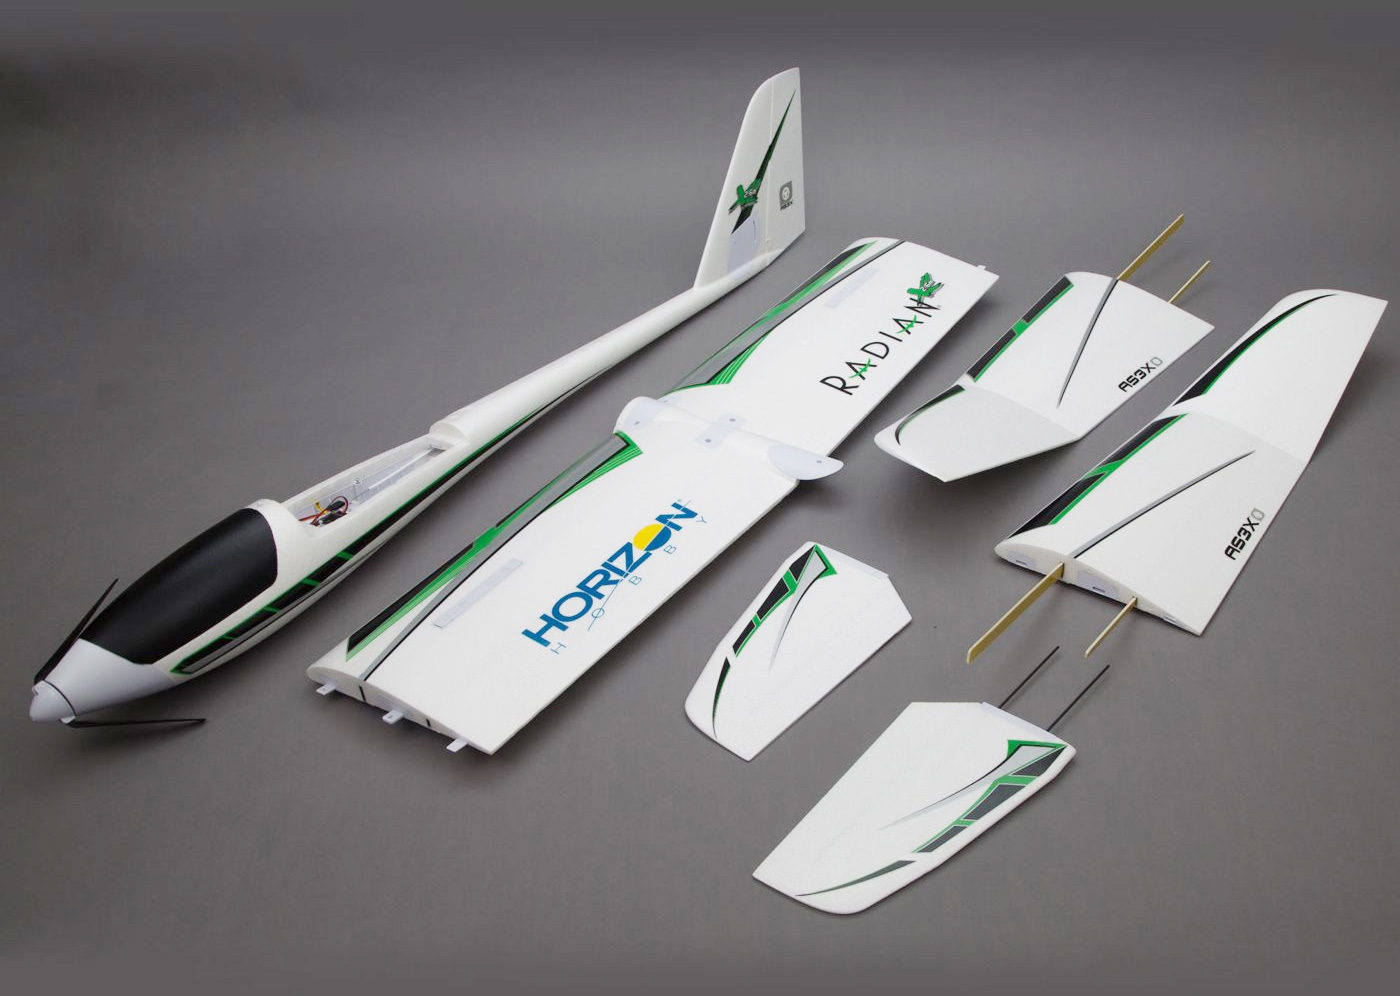 Kit d'un motoplaneur prêt à voler, on notera que l'aile est composée de 3 sections reliées par 4 clés d'aile en bois